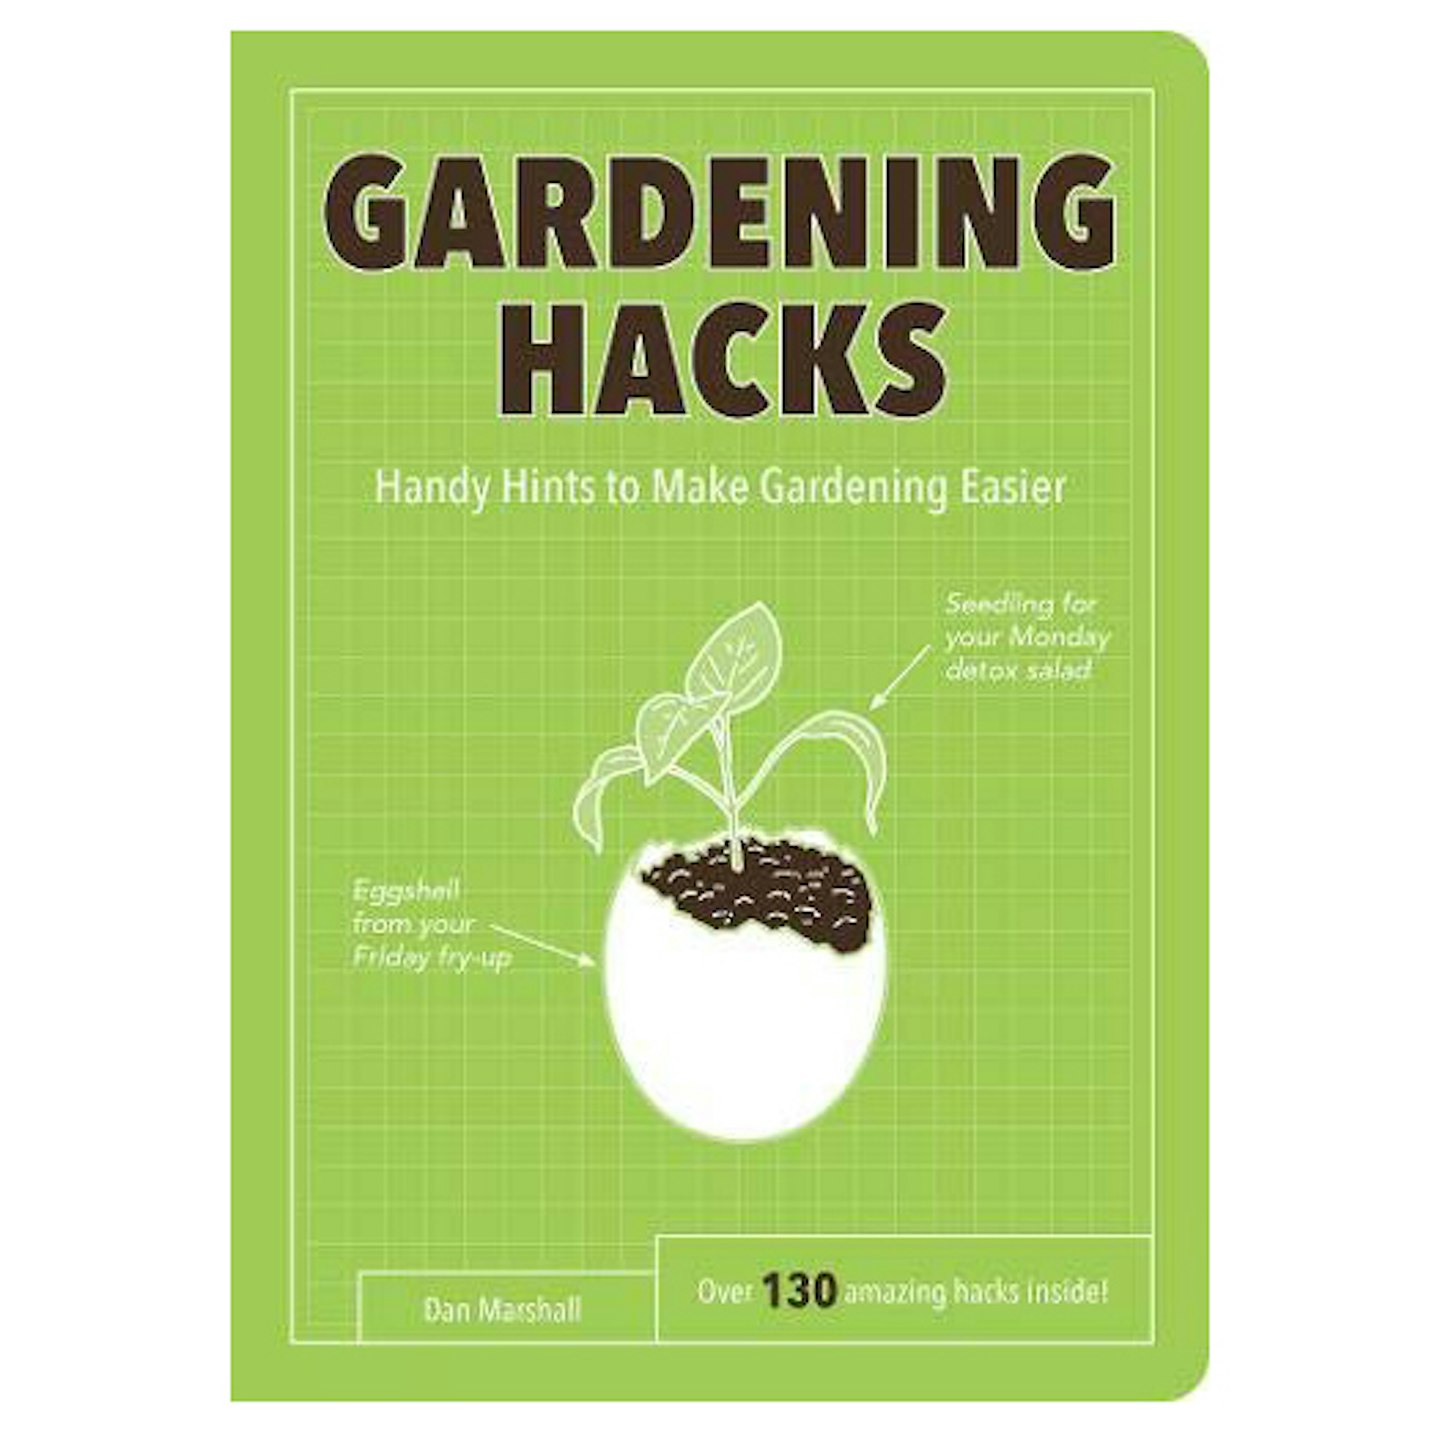 Gardening Hacks by Dan Marshall